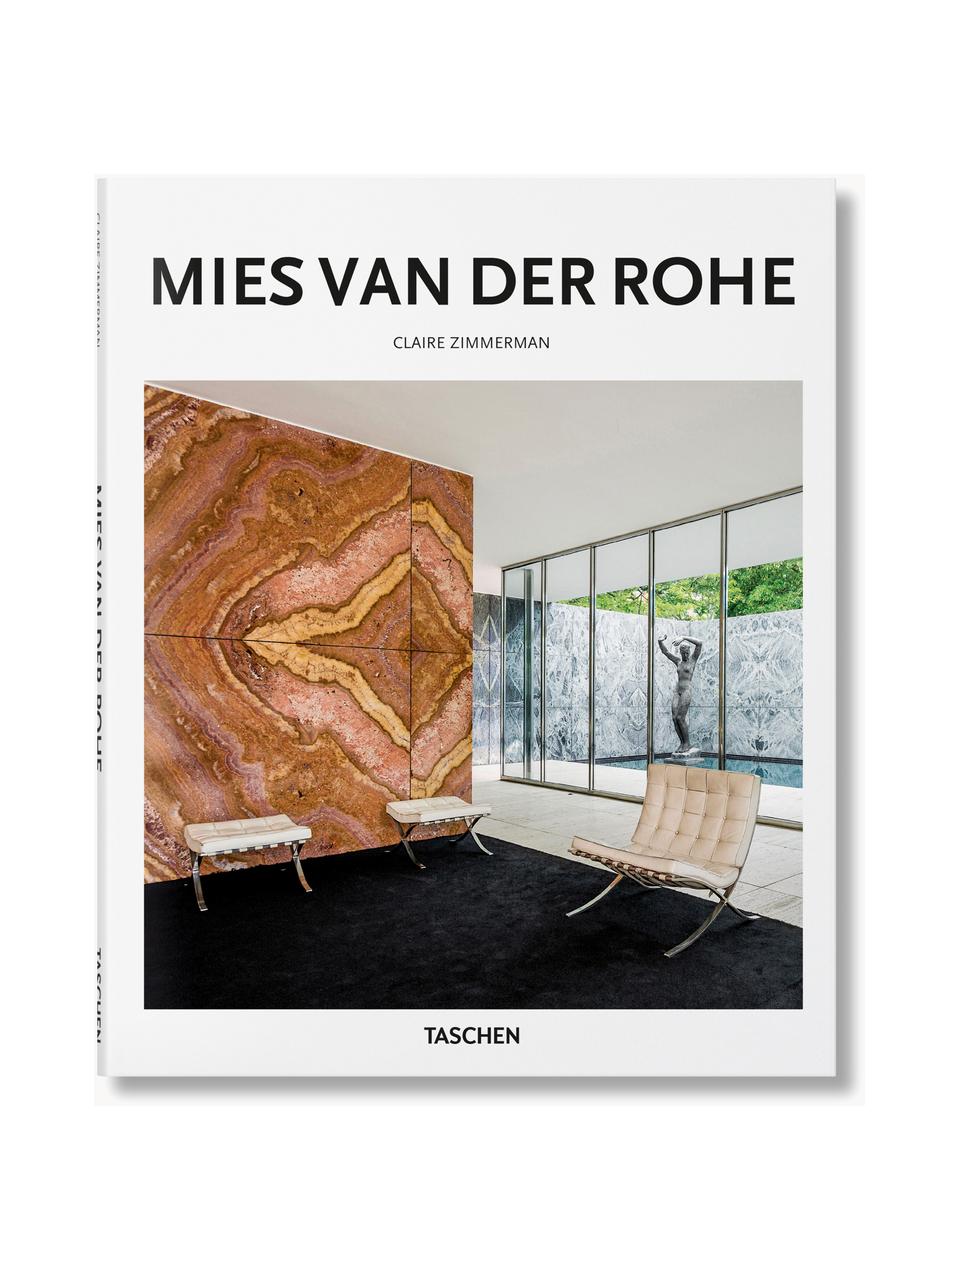 Ilustrovaná kniha Mies van der Rohe, Papír, pevná vazba, Mies van der Rohe, Š 21 cm, V 26 cm